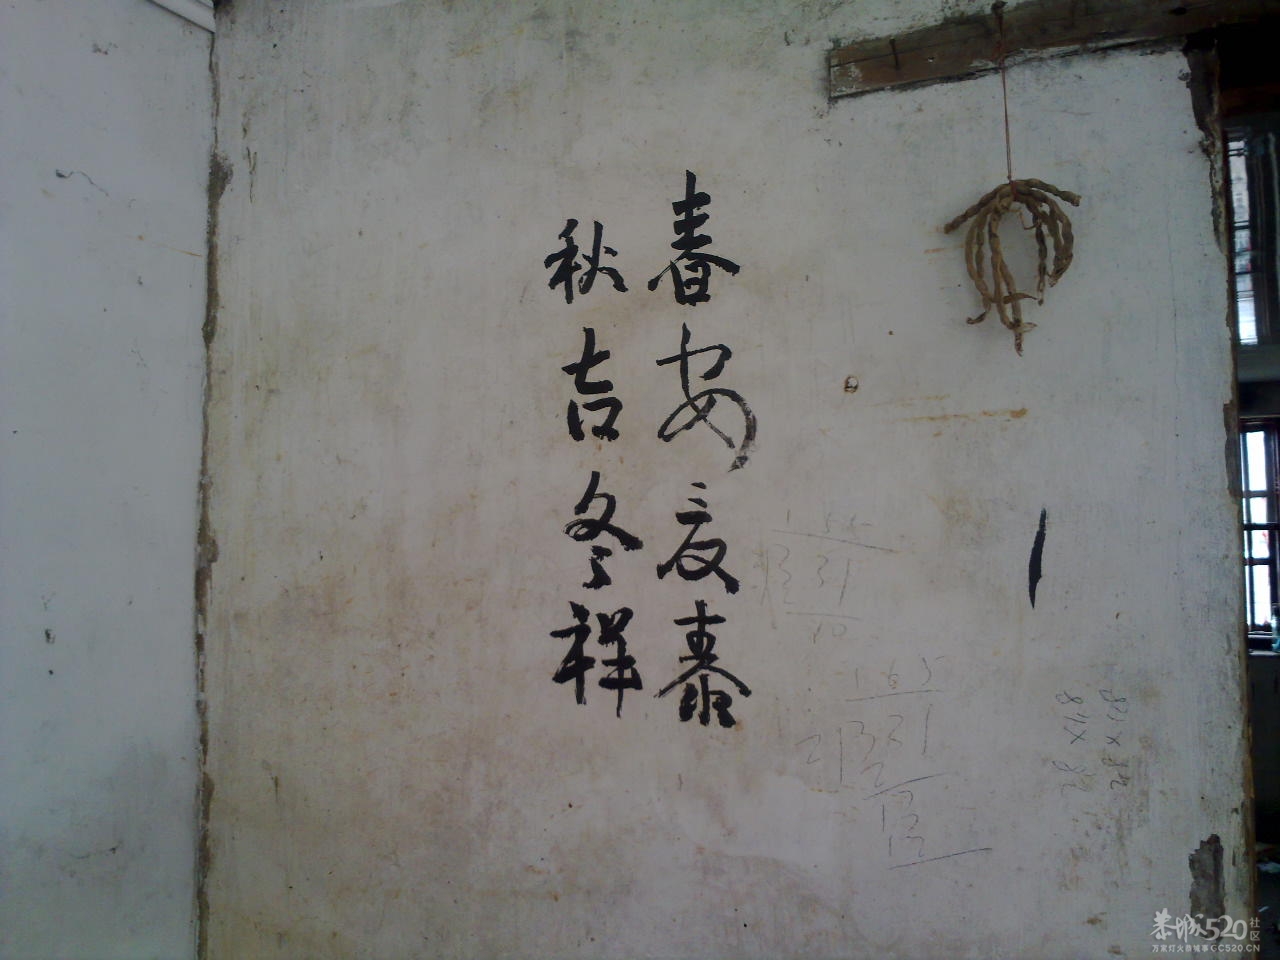 在邓扒村一间民房墙上拍到的诗词901 / 作者:金网 / 帖子ID:11390